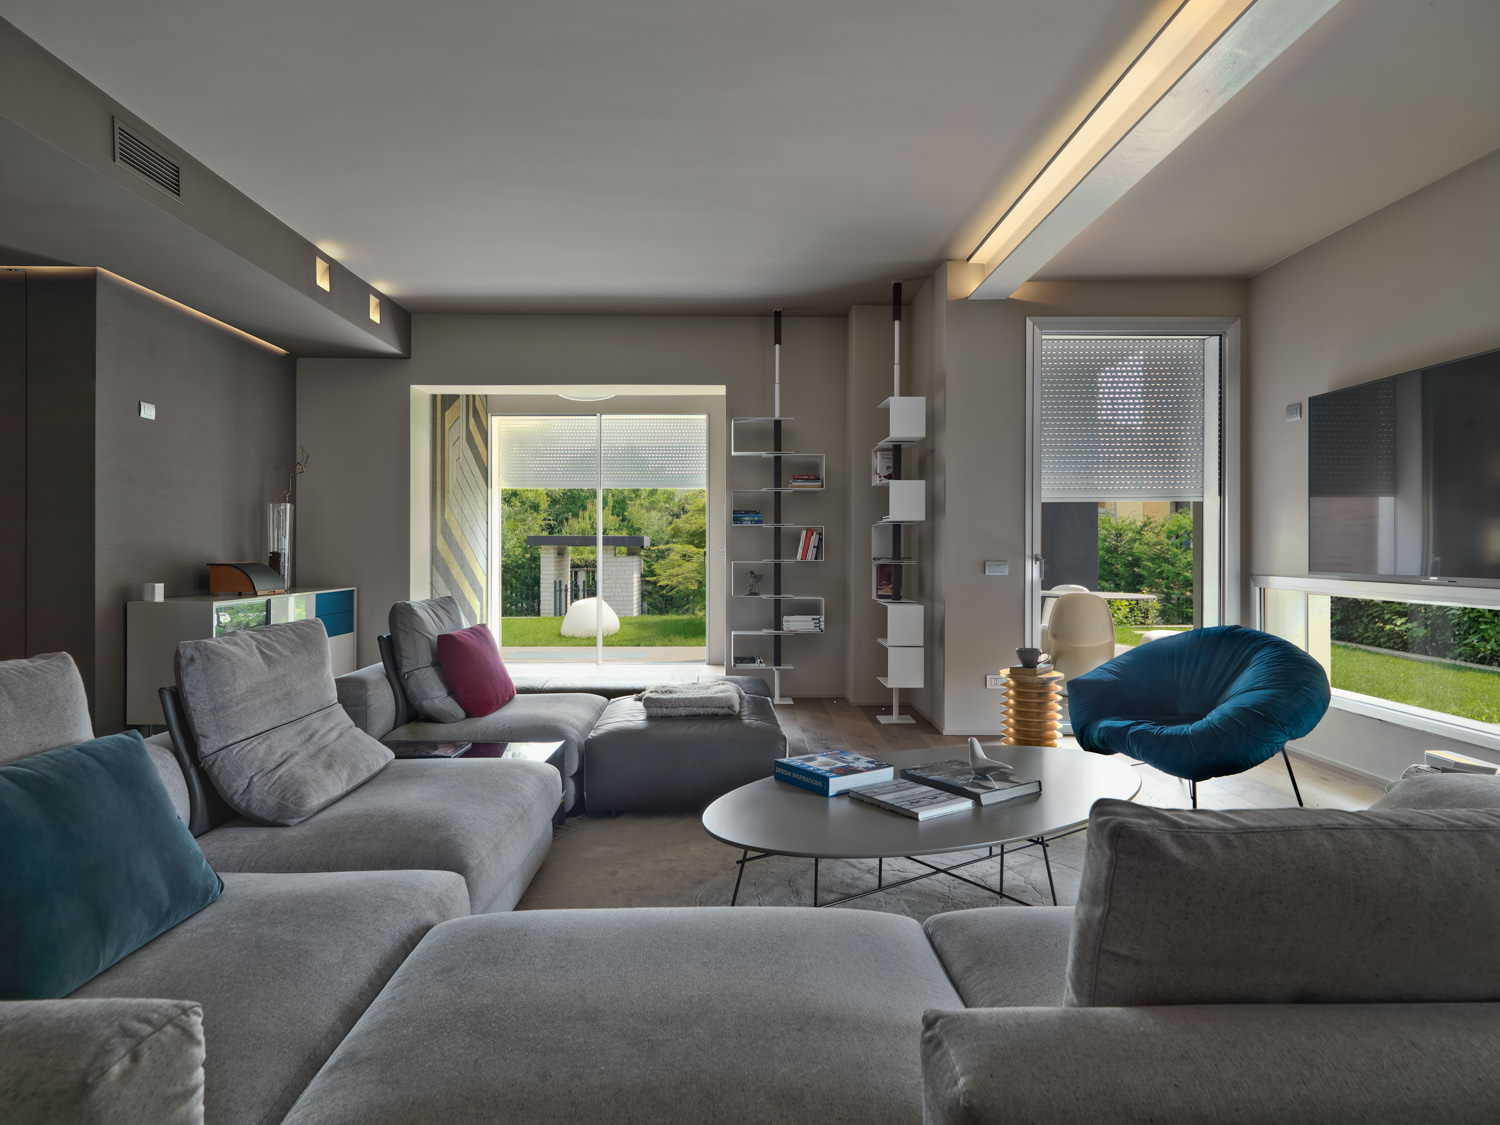 Interno di moderno soggiorno con divano in tessuto e poltroncine colorate affacciato sul giardino